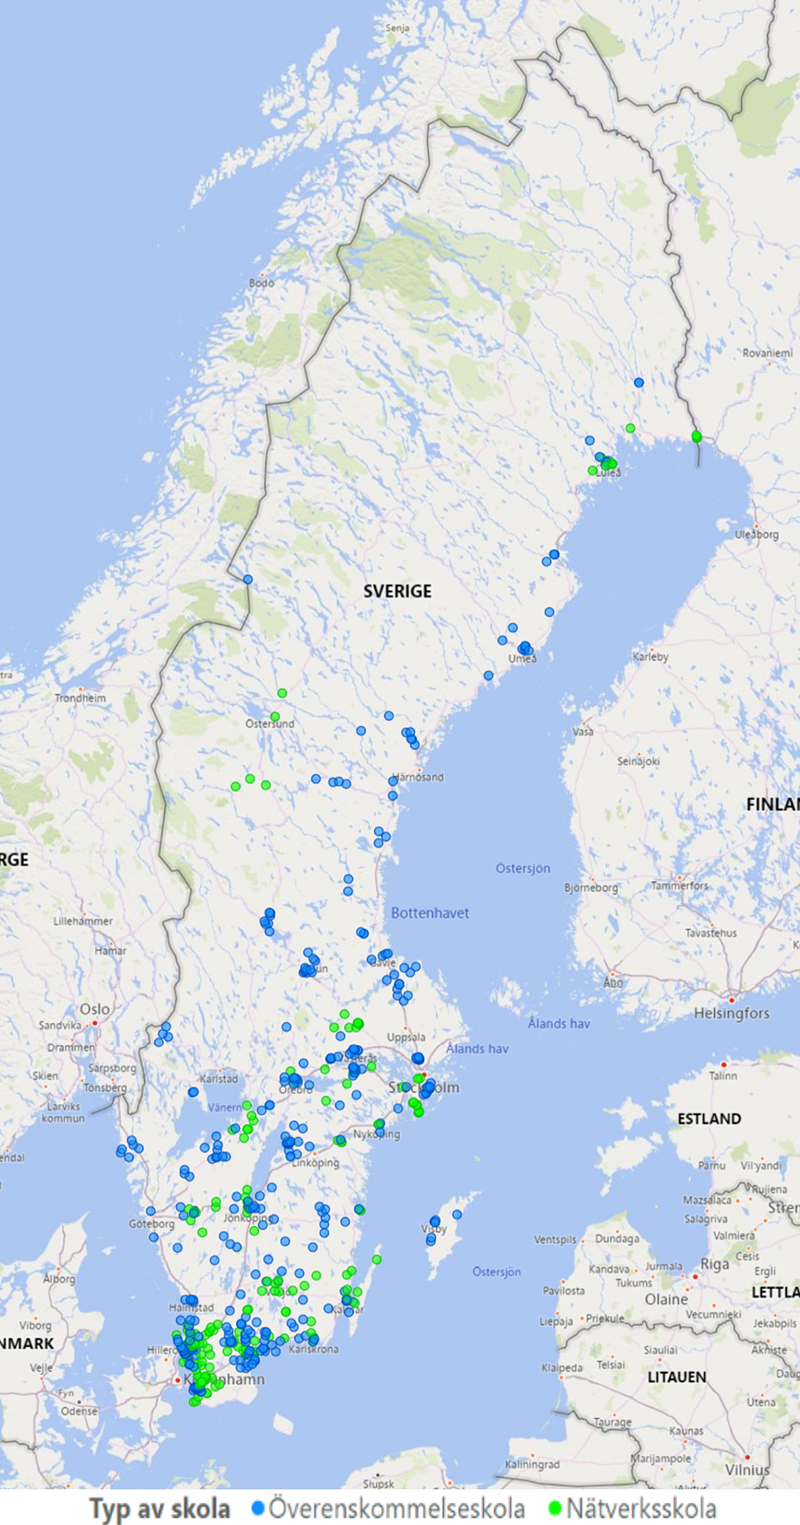 Sverigekarta markerad med prickar där det finns skolor kopplade till rörelsesatsningen